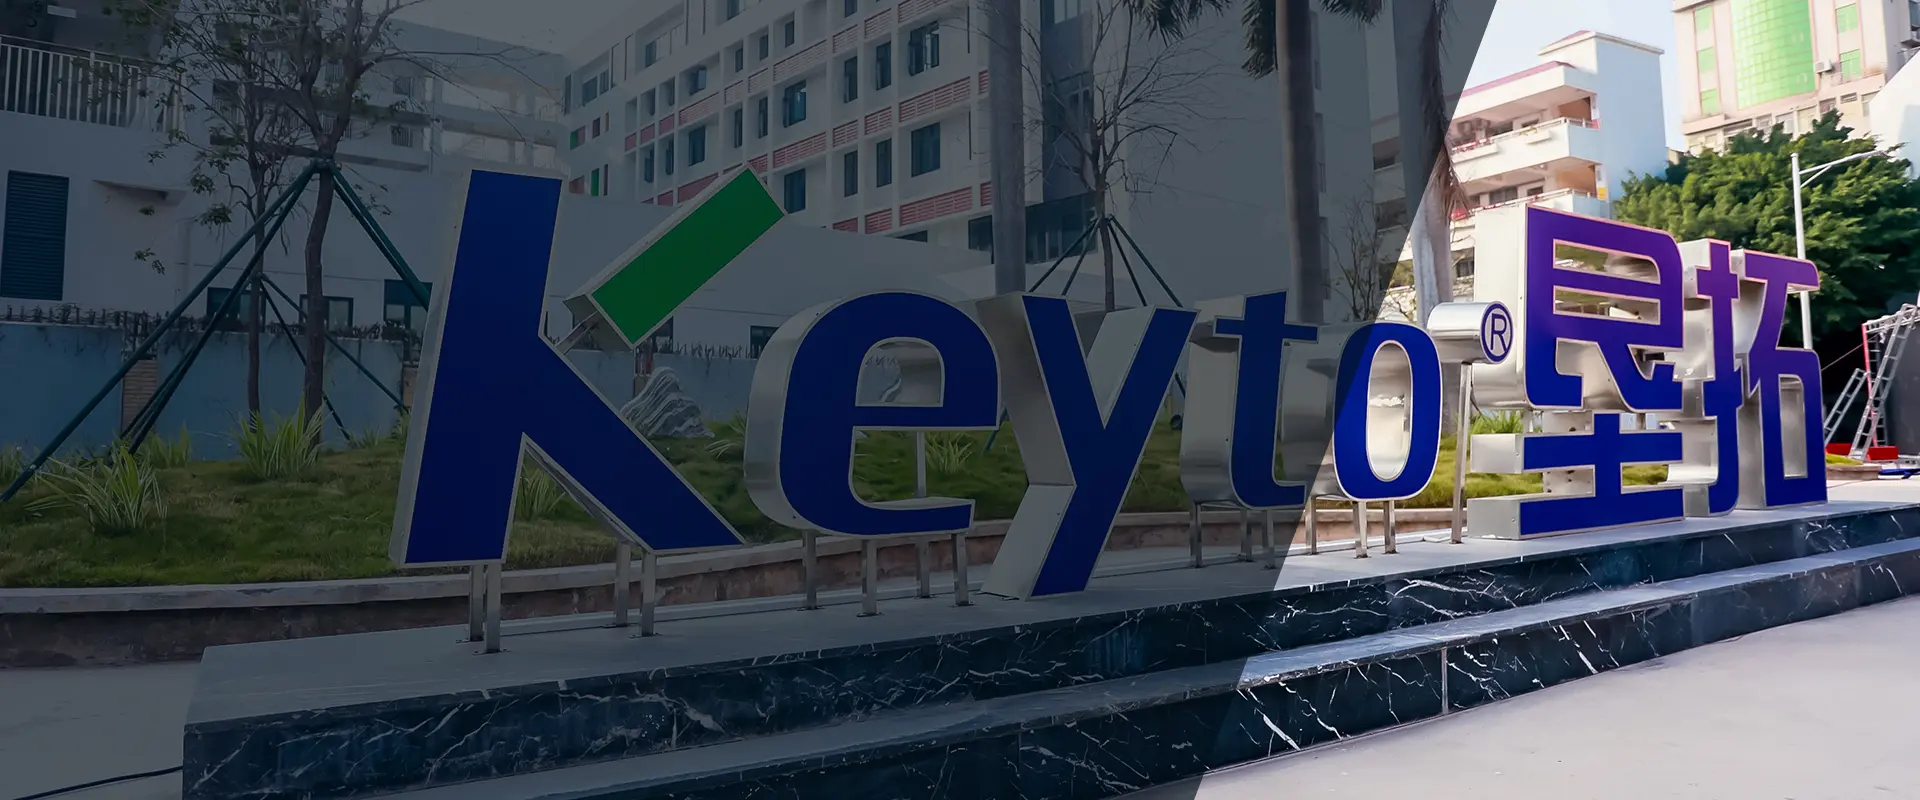 Keyto Company Video Center